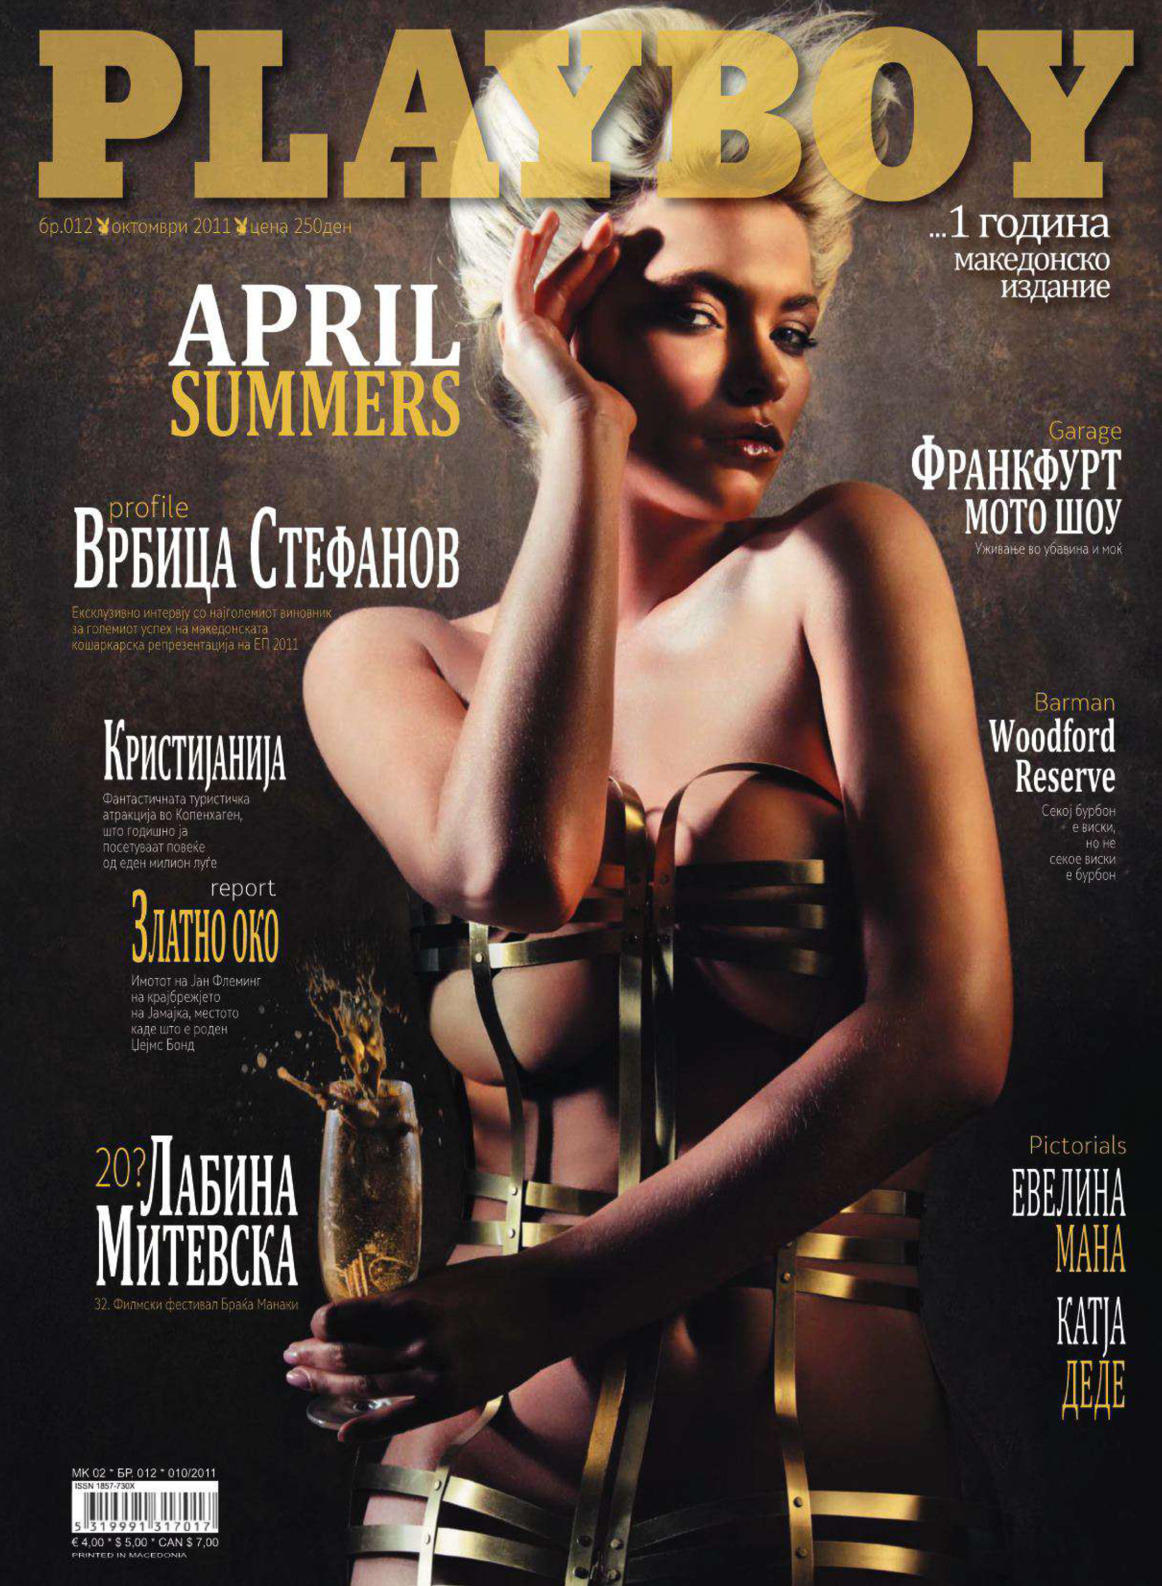 nomalez:  April Summers (Angleterre/England) - Playboy Macedonia 2011[Français]